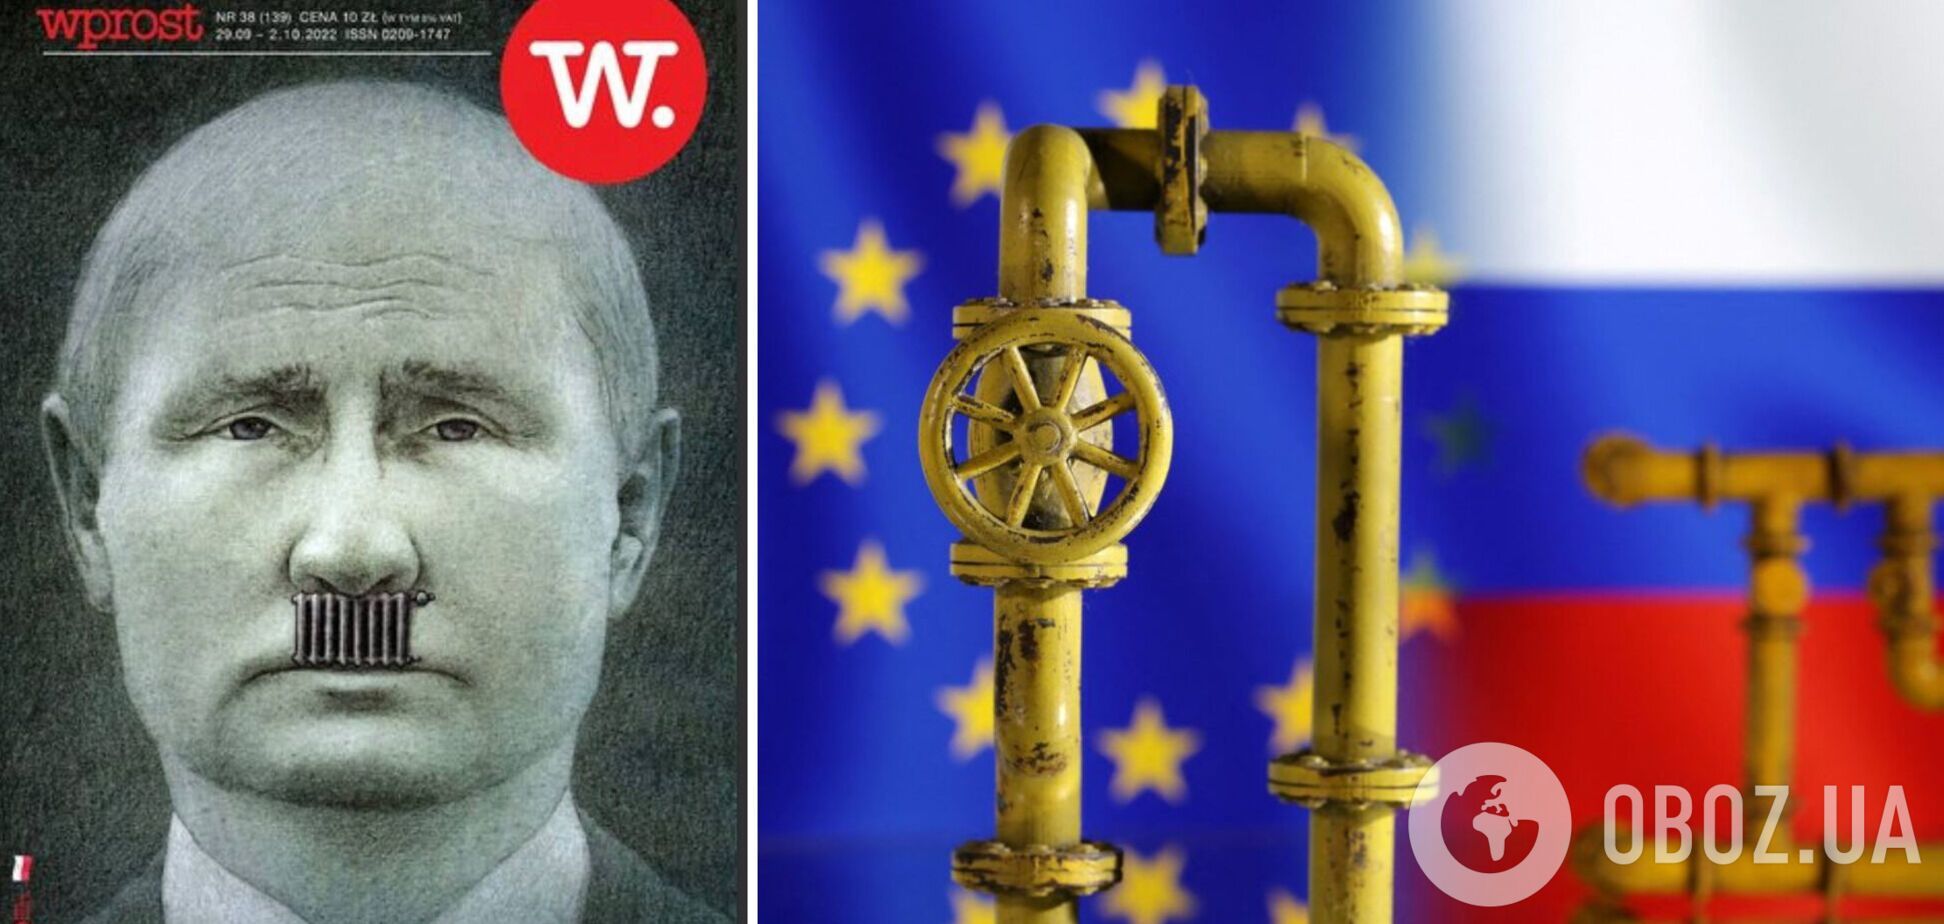 Польский журнал Wprost разместил на обложке фото 'газового фюрера' Путина